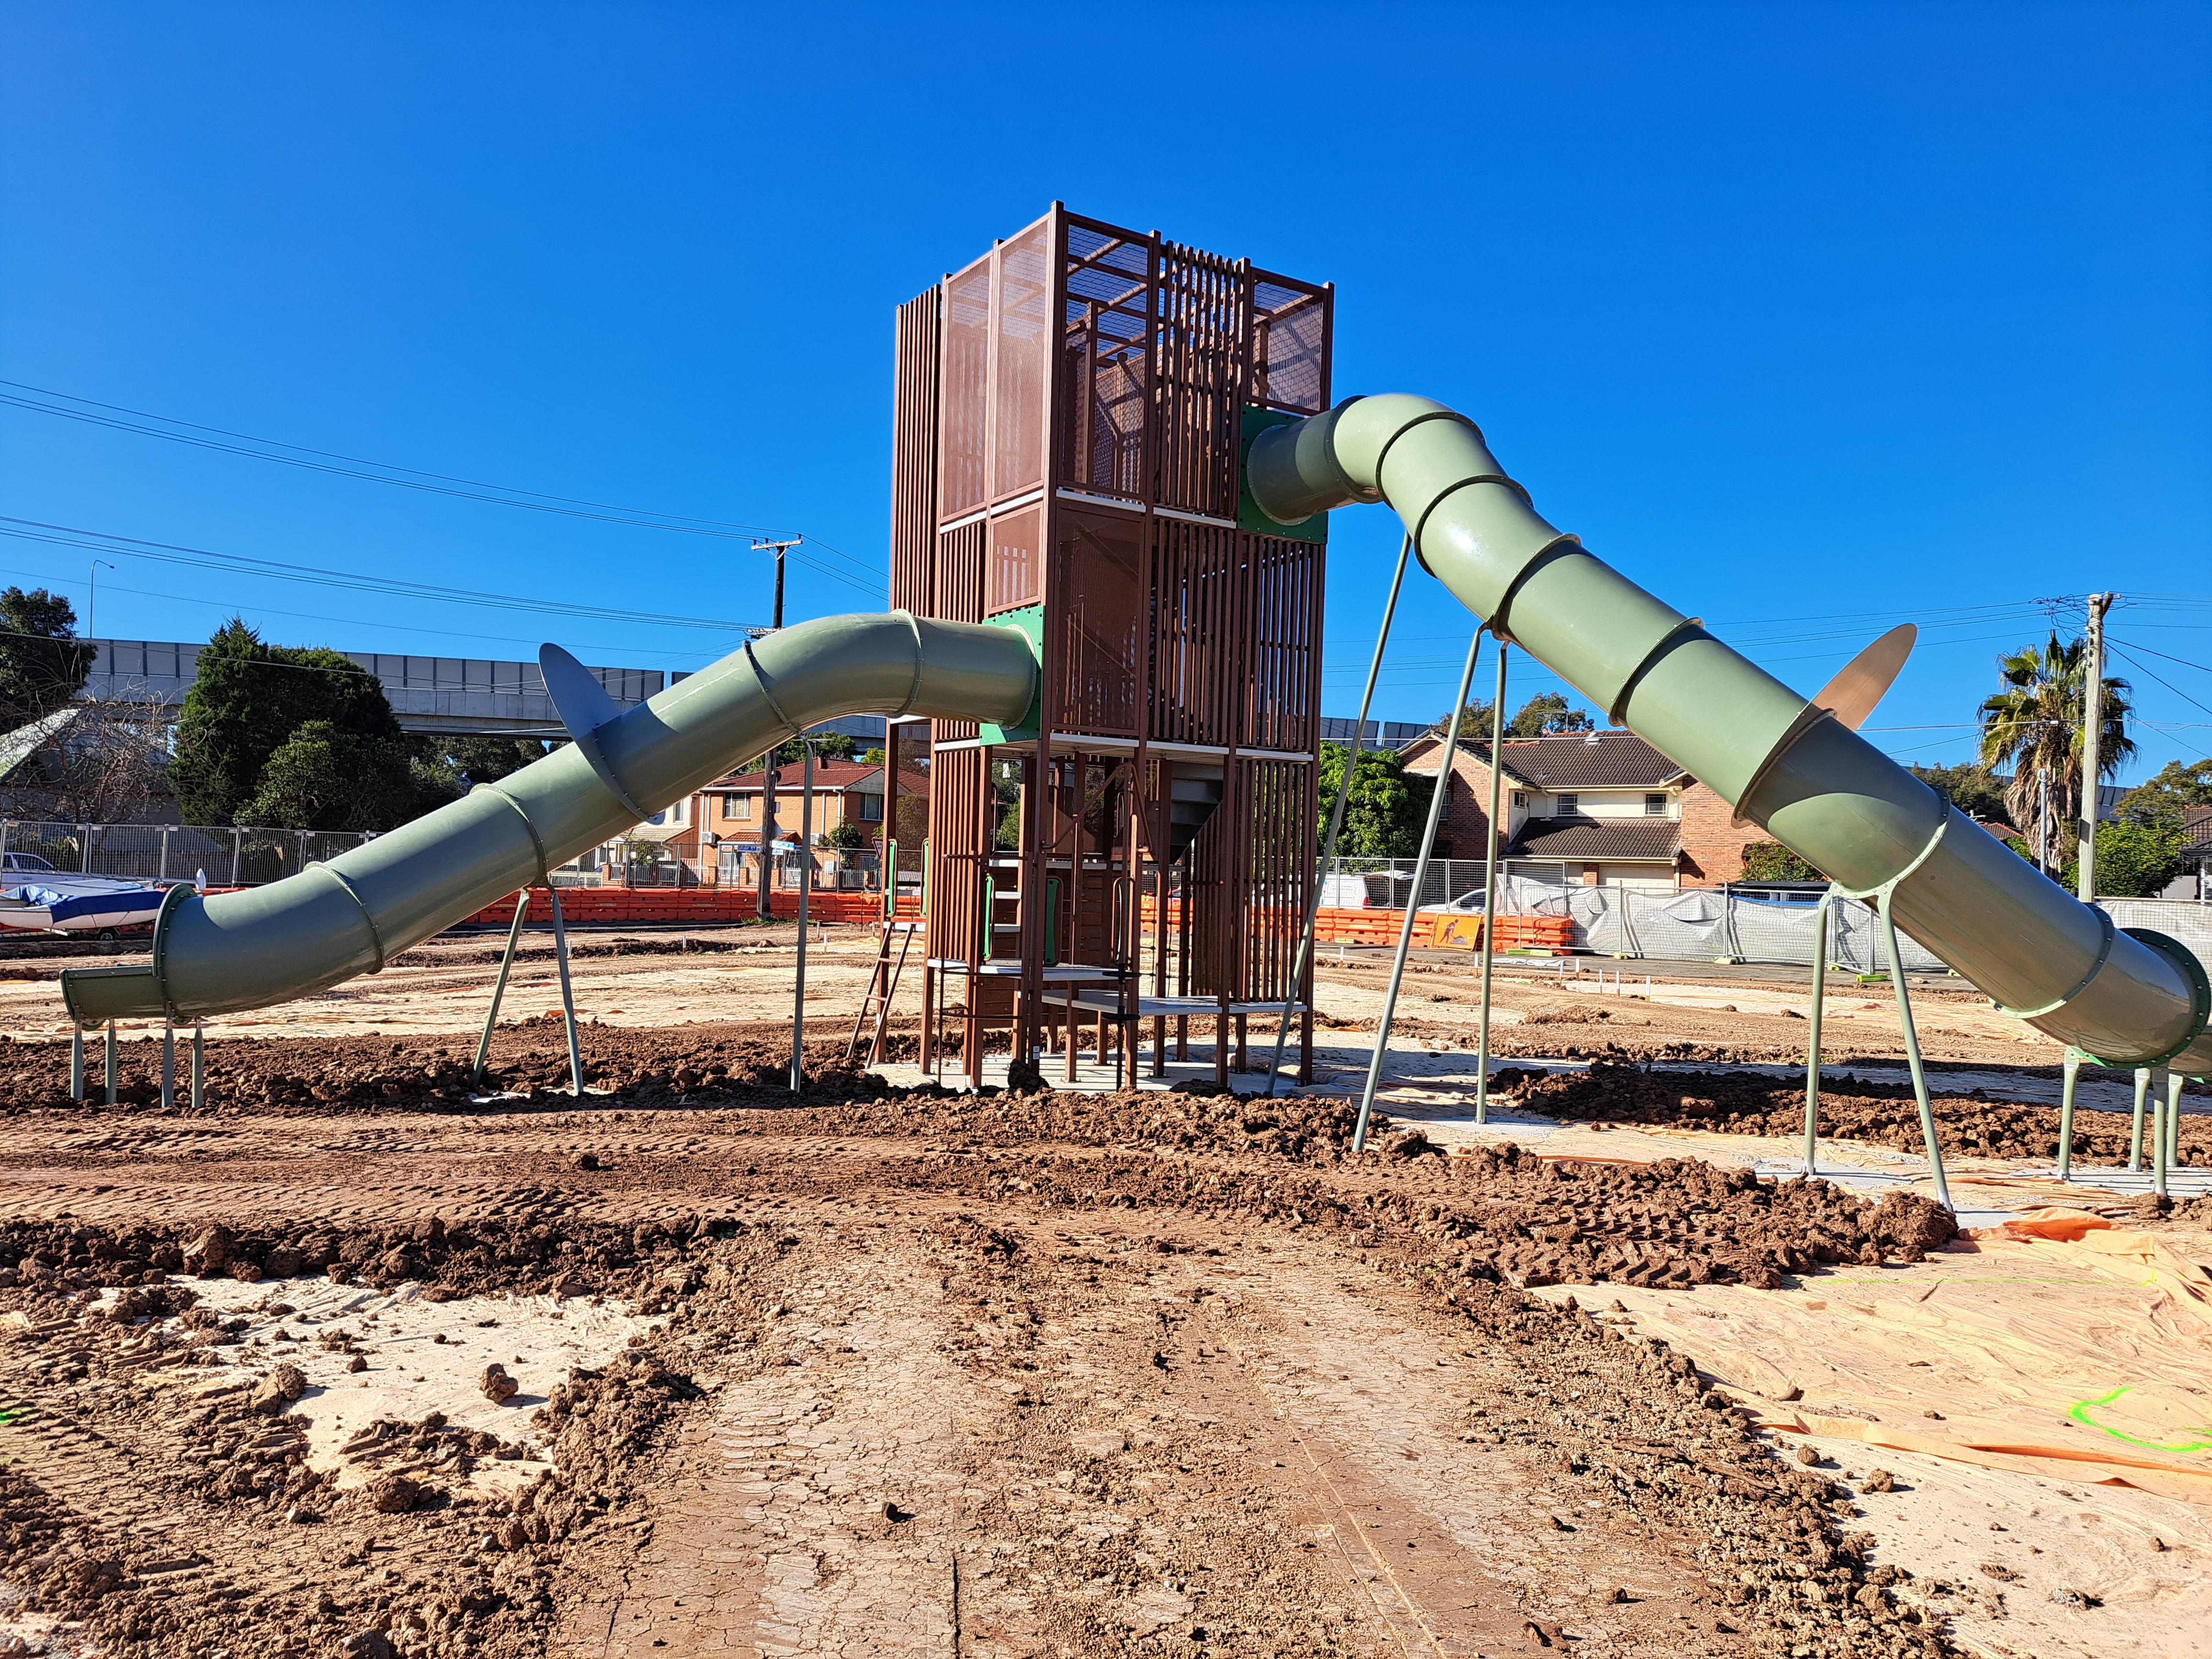 New slides under construction at F.S. Garside park